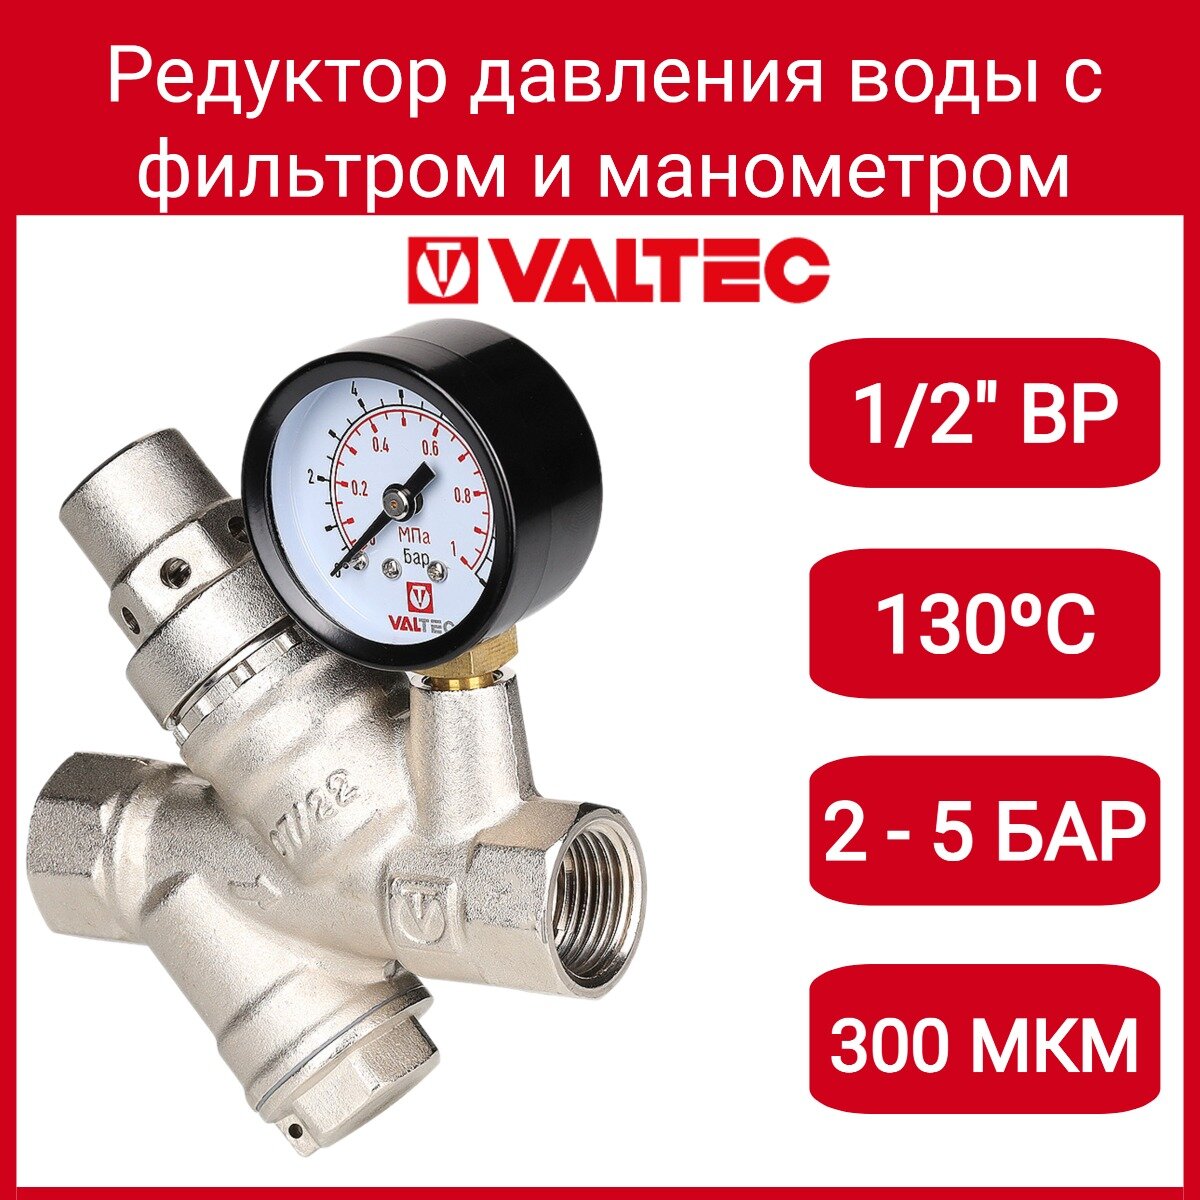 Редуктор давления VALTEC VT082N04 муфтовый (ВР/ВР) Ду 15 (1/2")